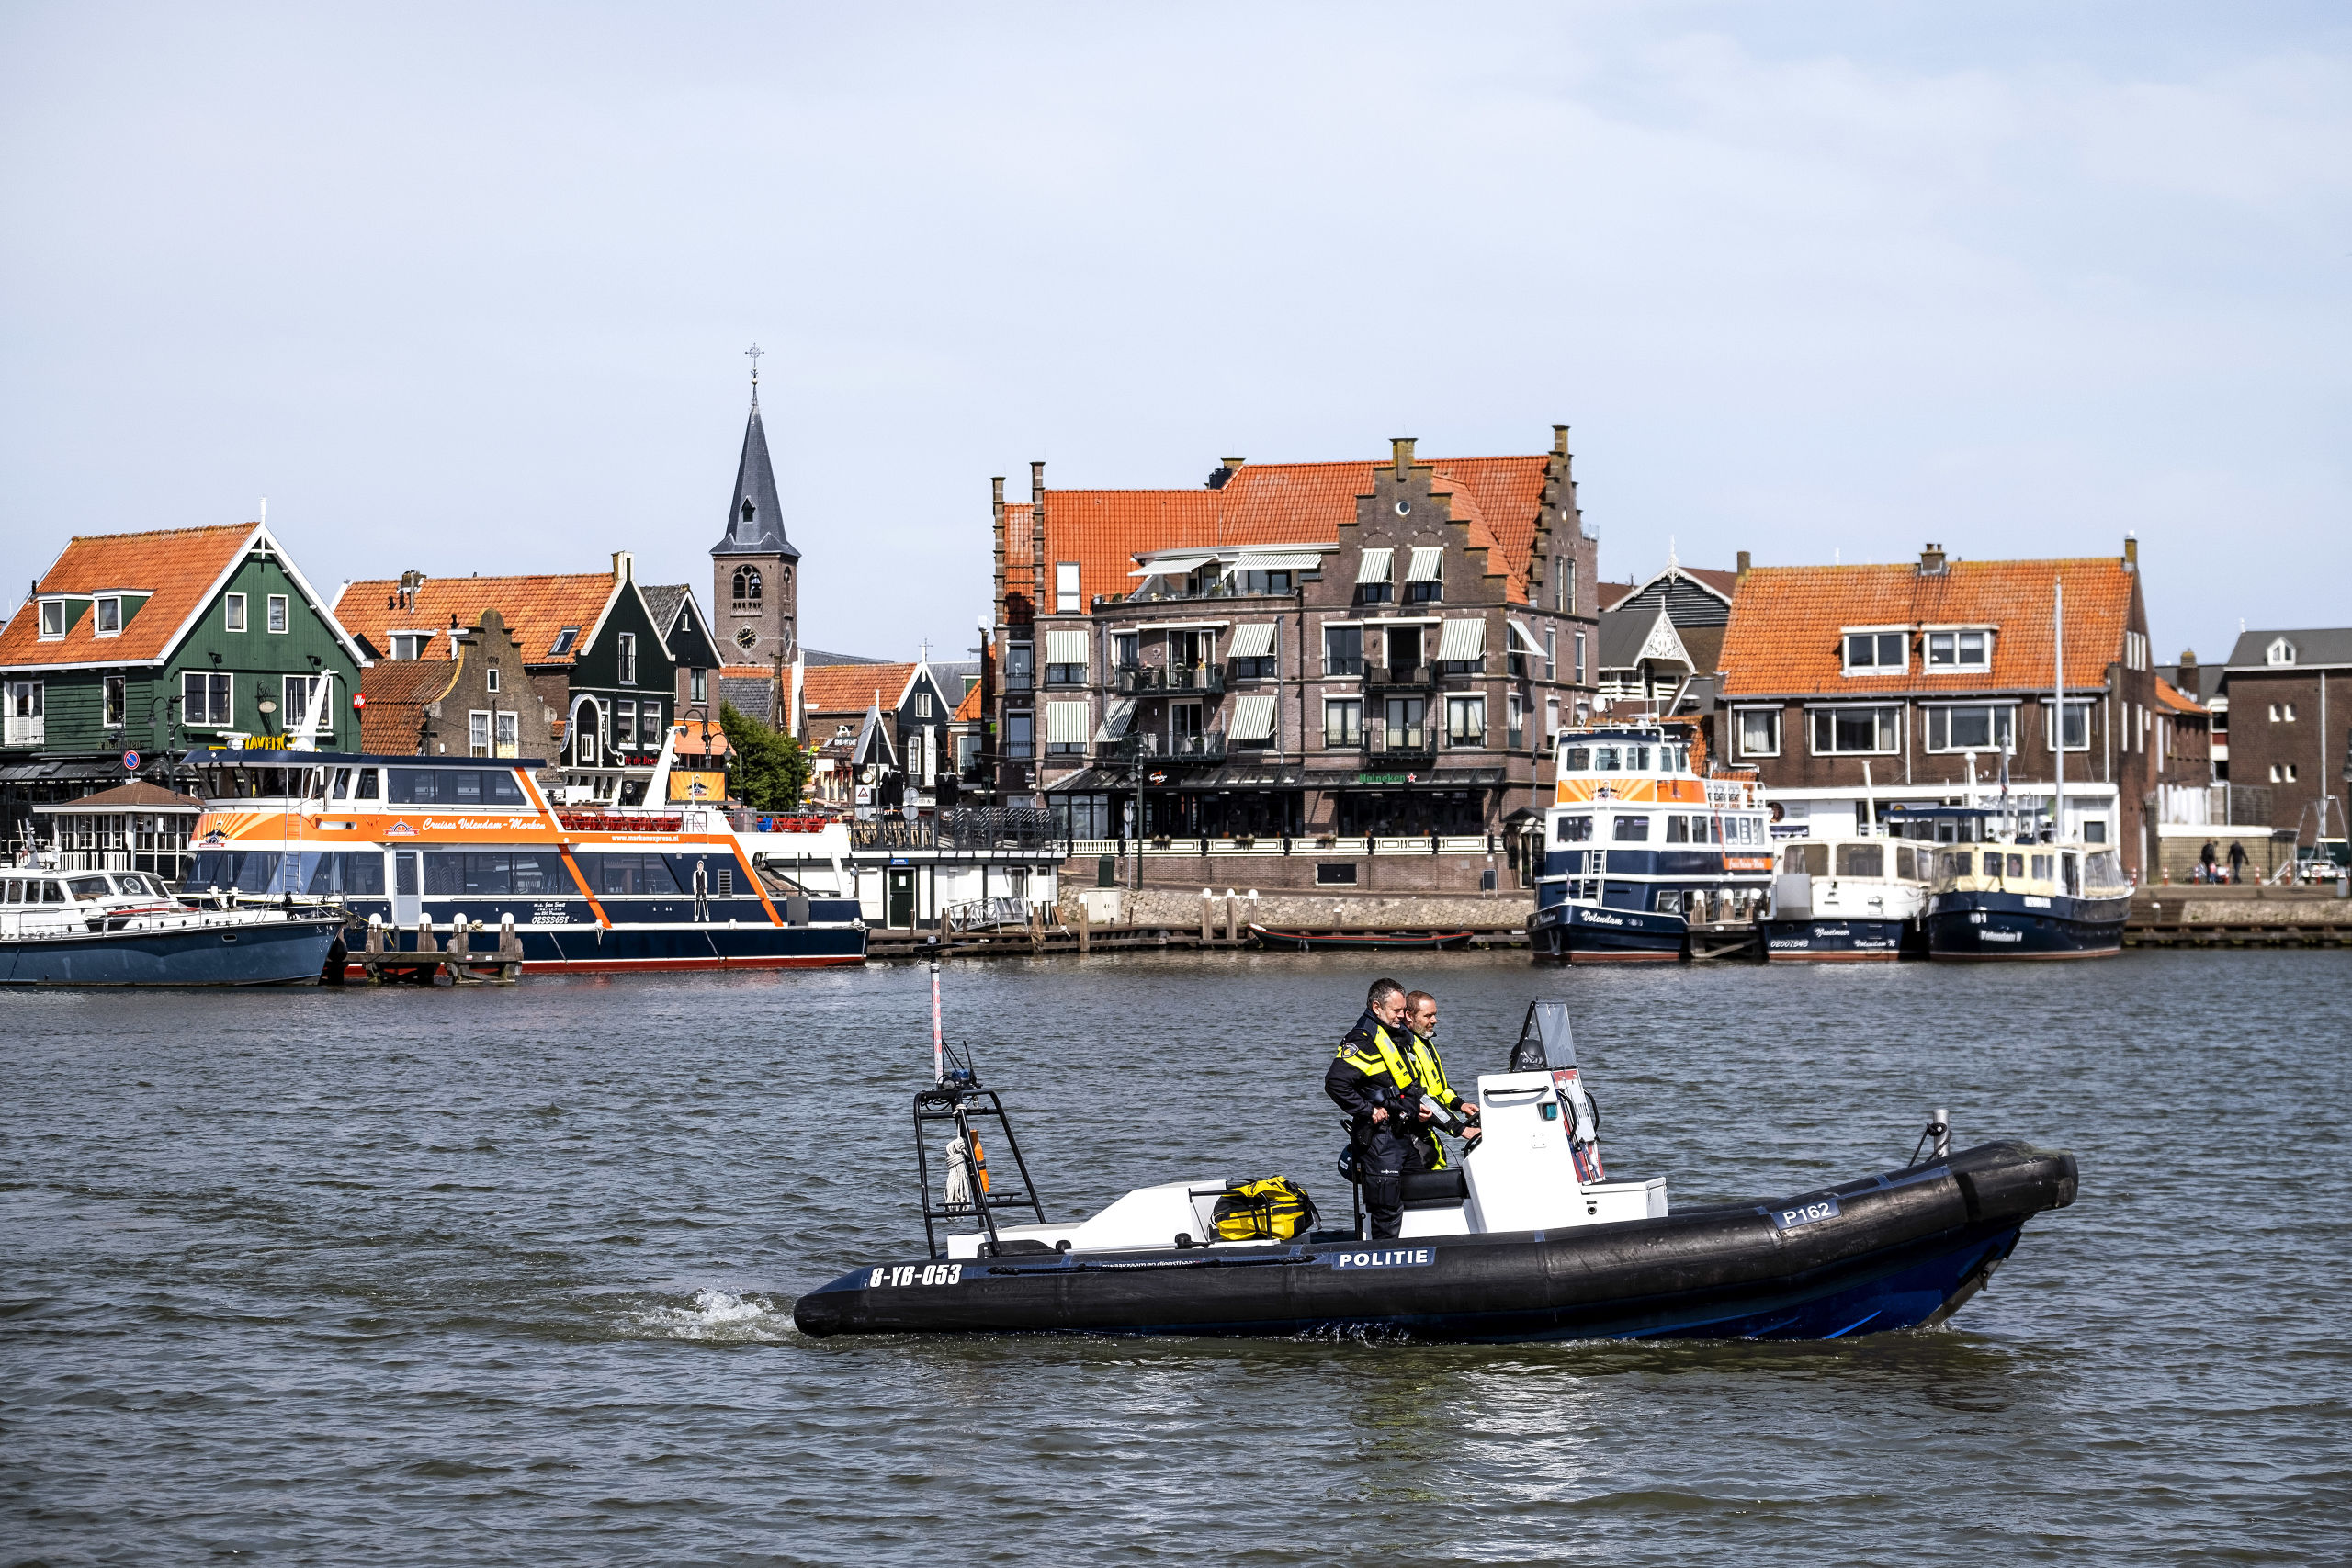 De gemeente Volendam gaat de pleziervaart tijdens het paasweekeinde de doorgang belemmeren